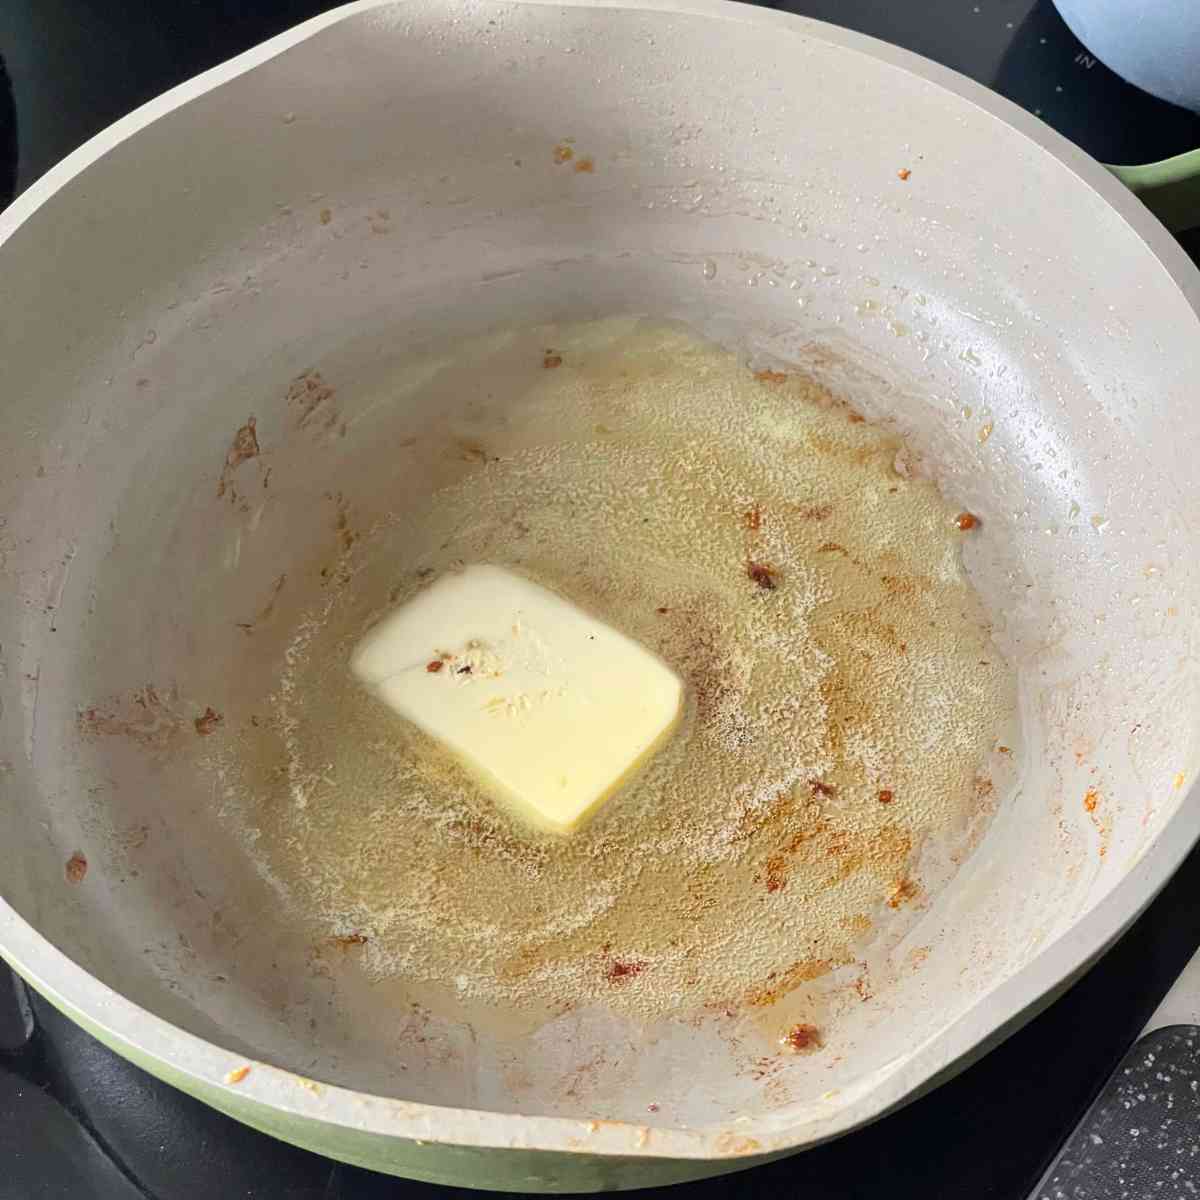 Lower heat to melt butter